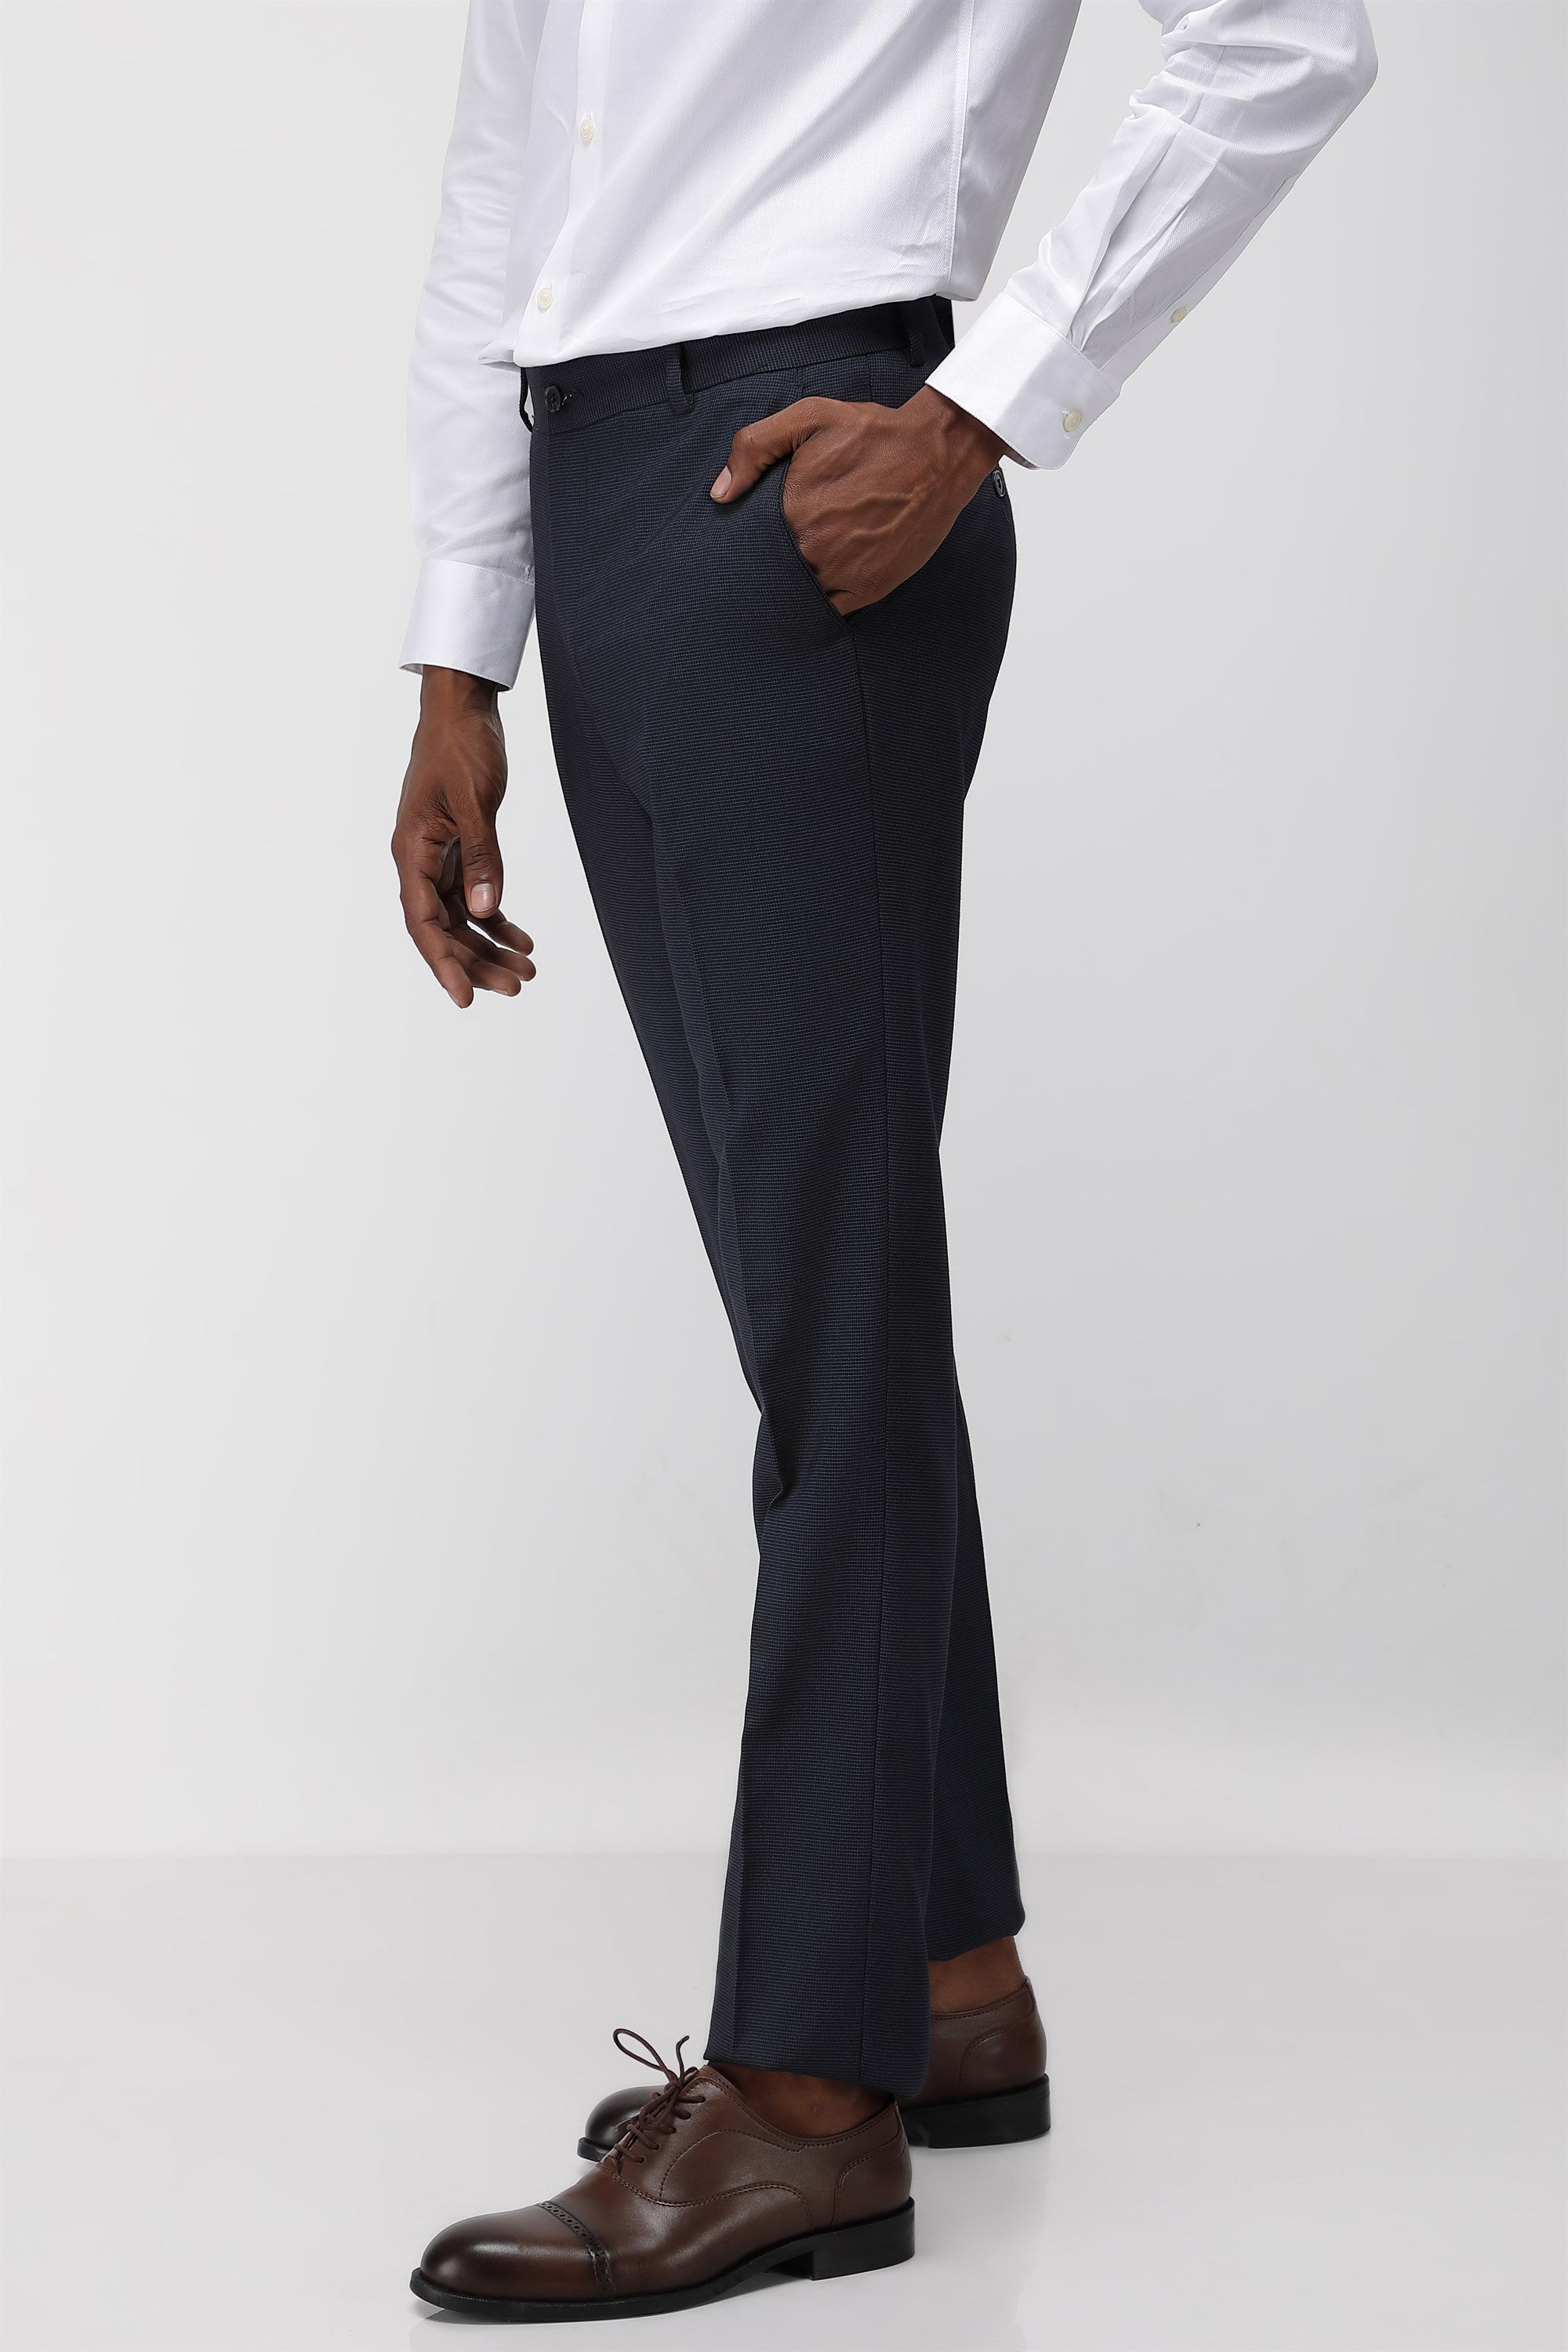 Wehilion Men's Premium Slim Fit Dress Suit Pants Slacks Tight Suit Elastic Formal  Trousers,White,L - Walmart.com